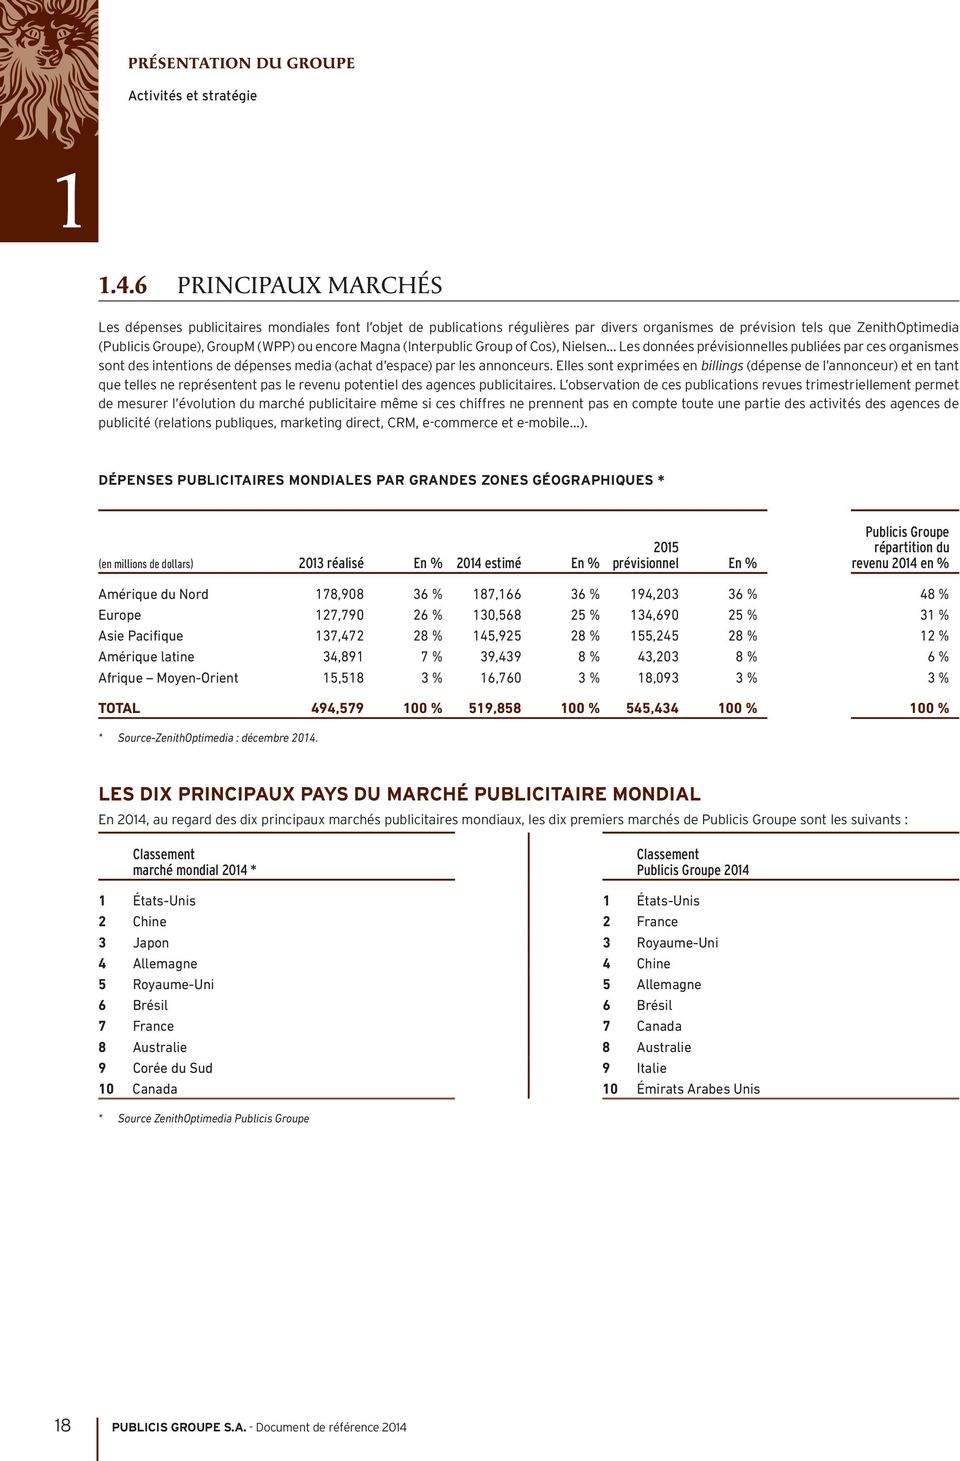 Magna (Interpublic Group of Cos), Nielsen Les données prévisionnelles publiées par ces organismes sont des intentions de dépenses media (achat d espace) par les annonceurs.